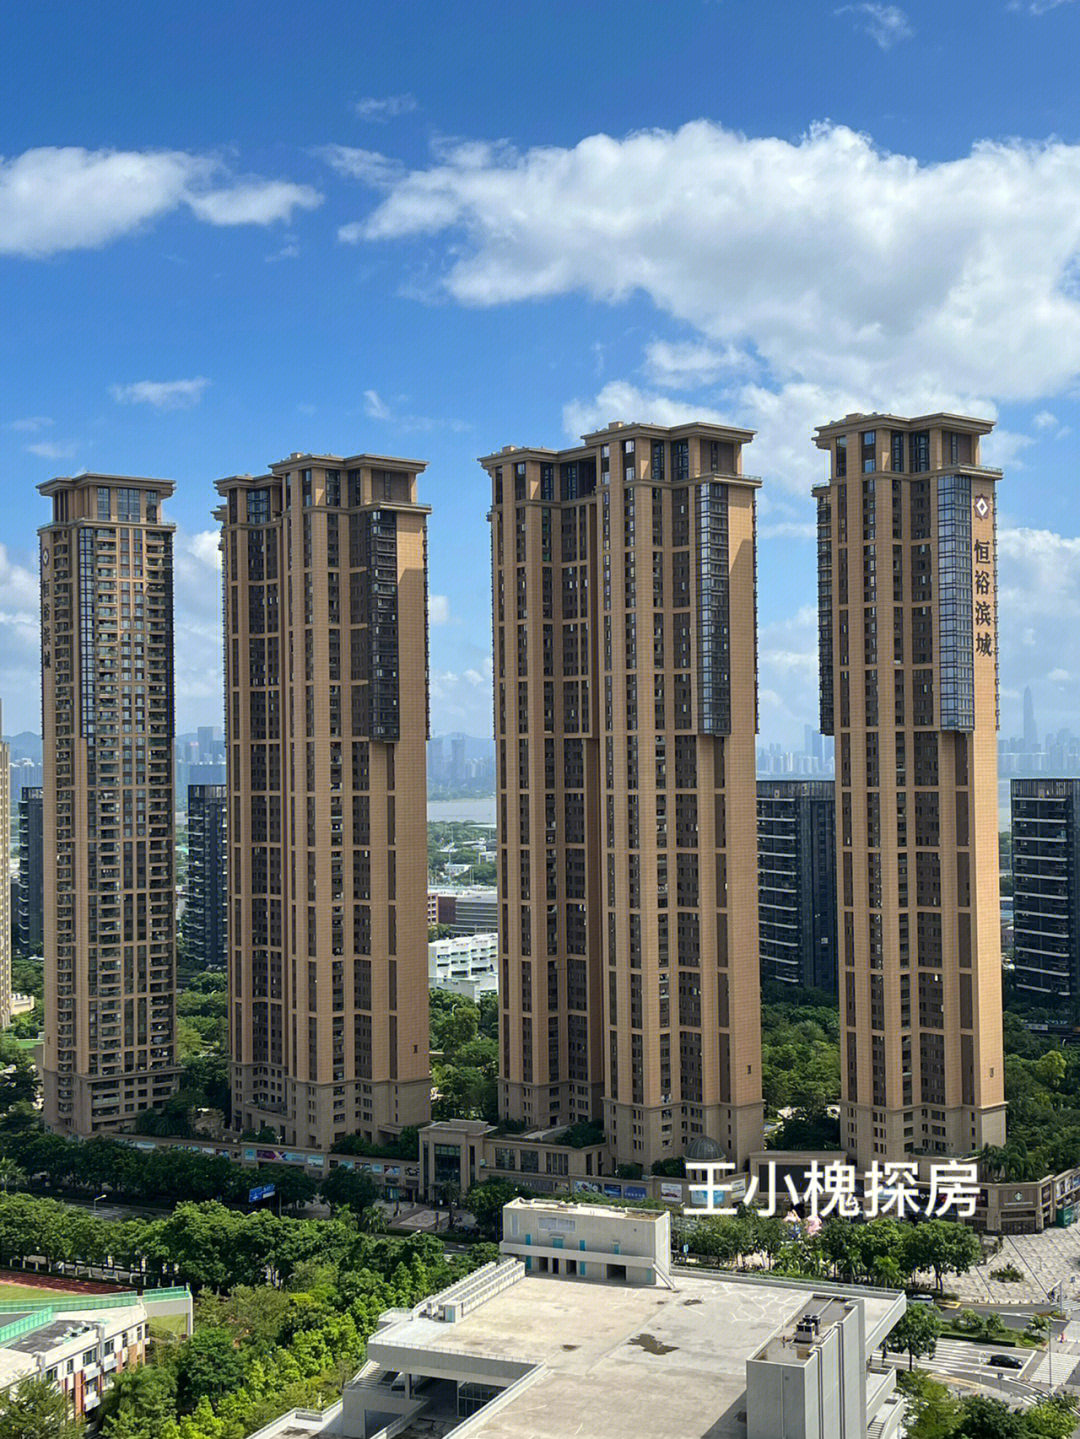 恒裕滨城二期,深圳最贵最好住宅!不接受反驳